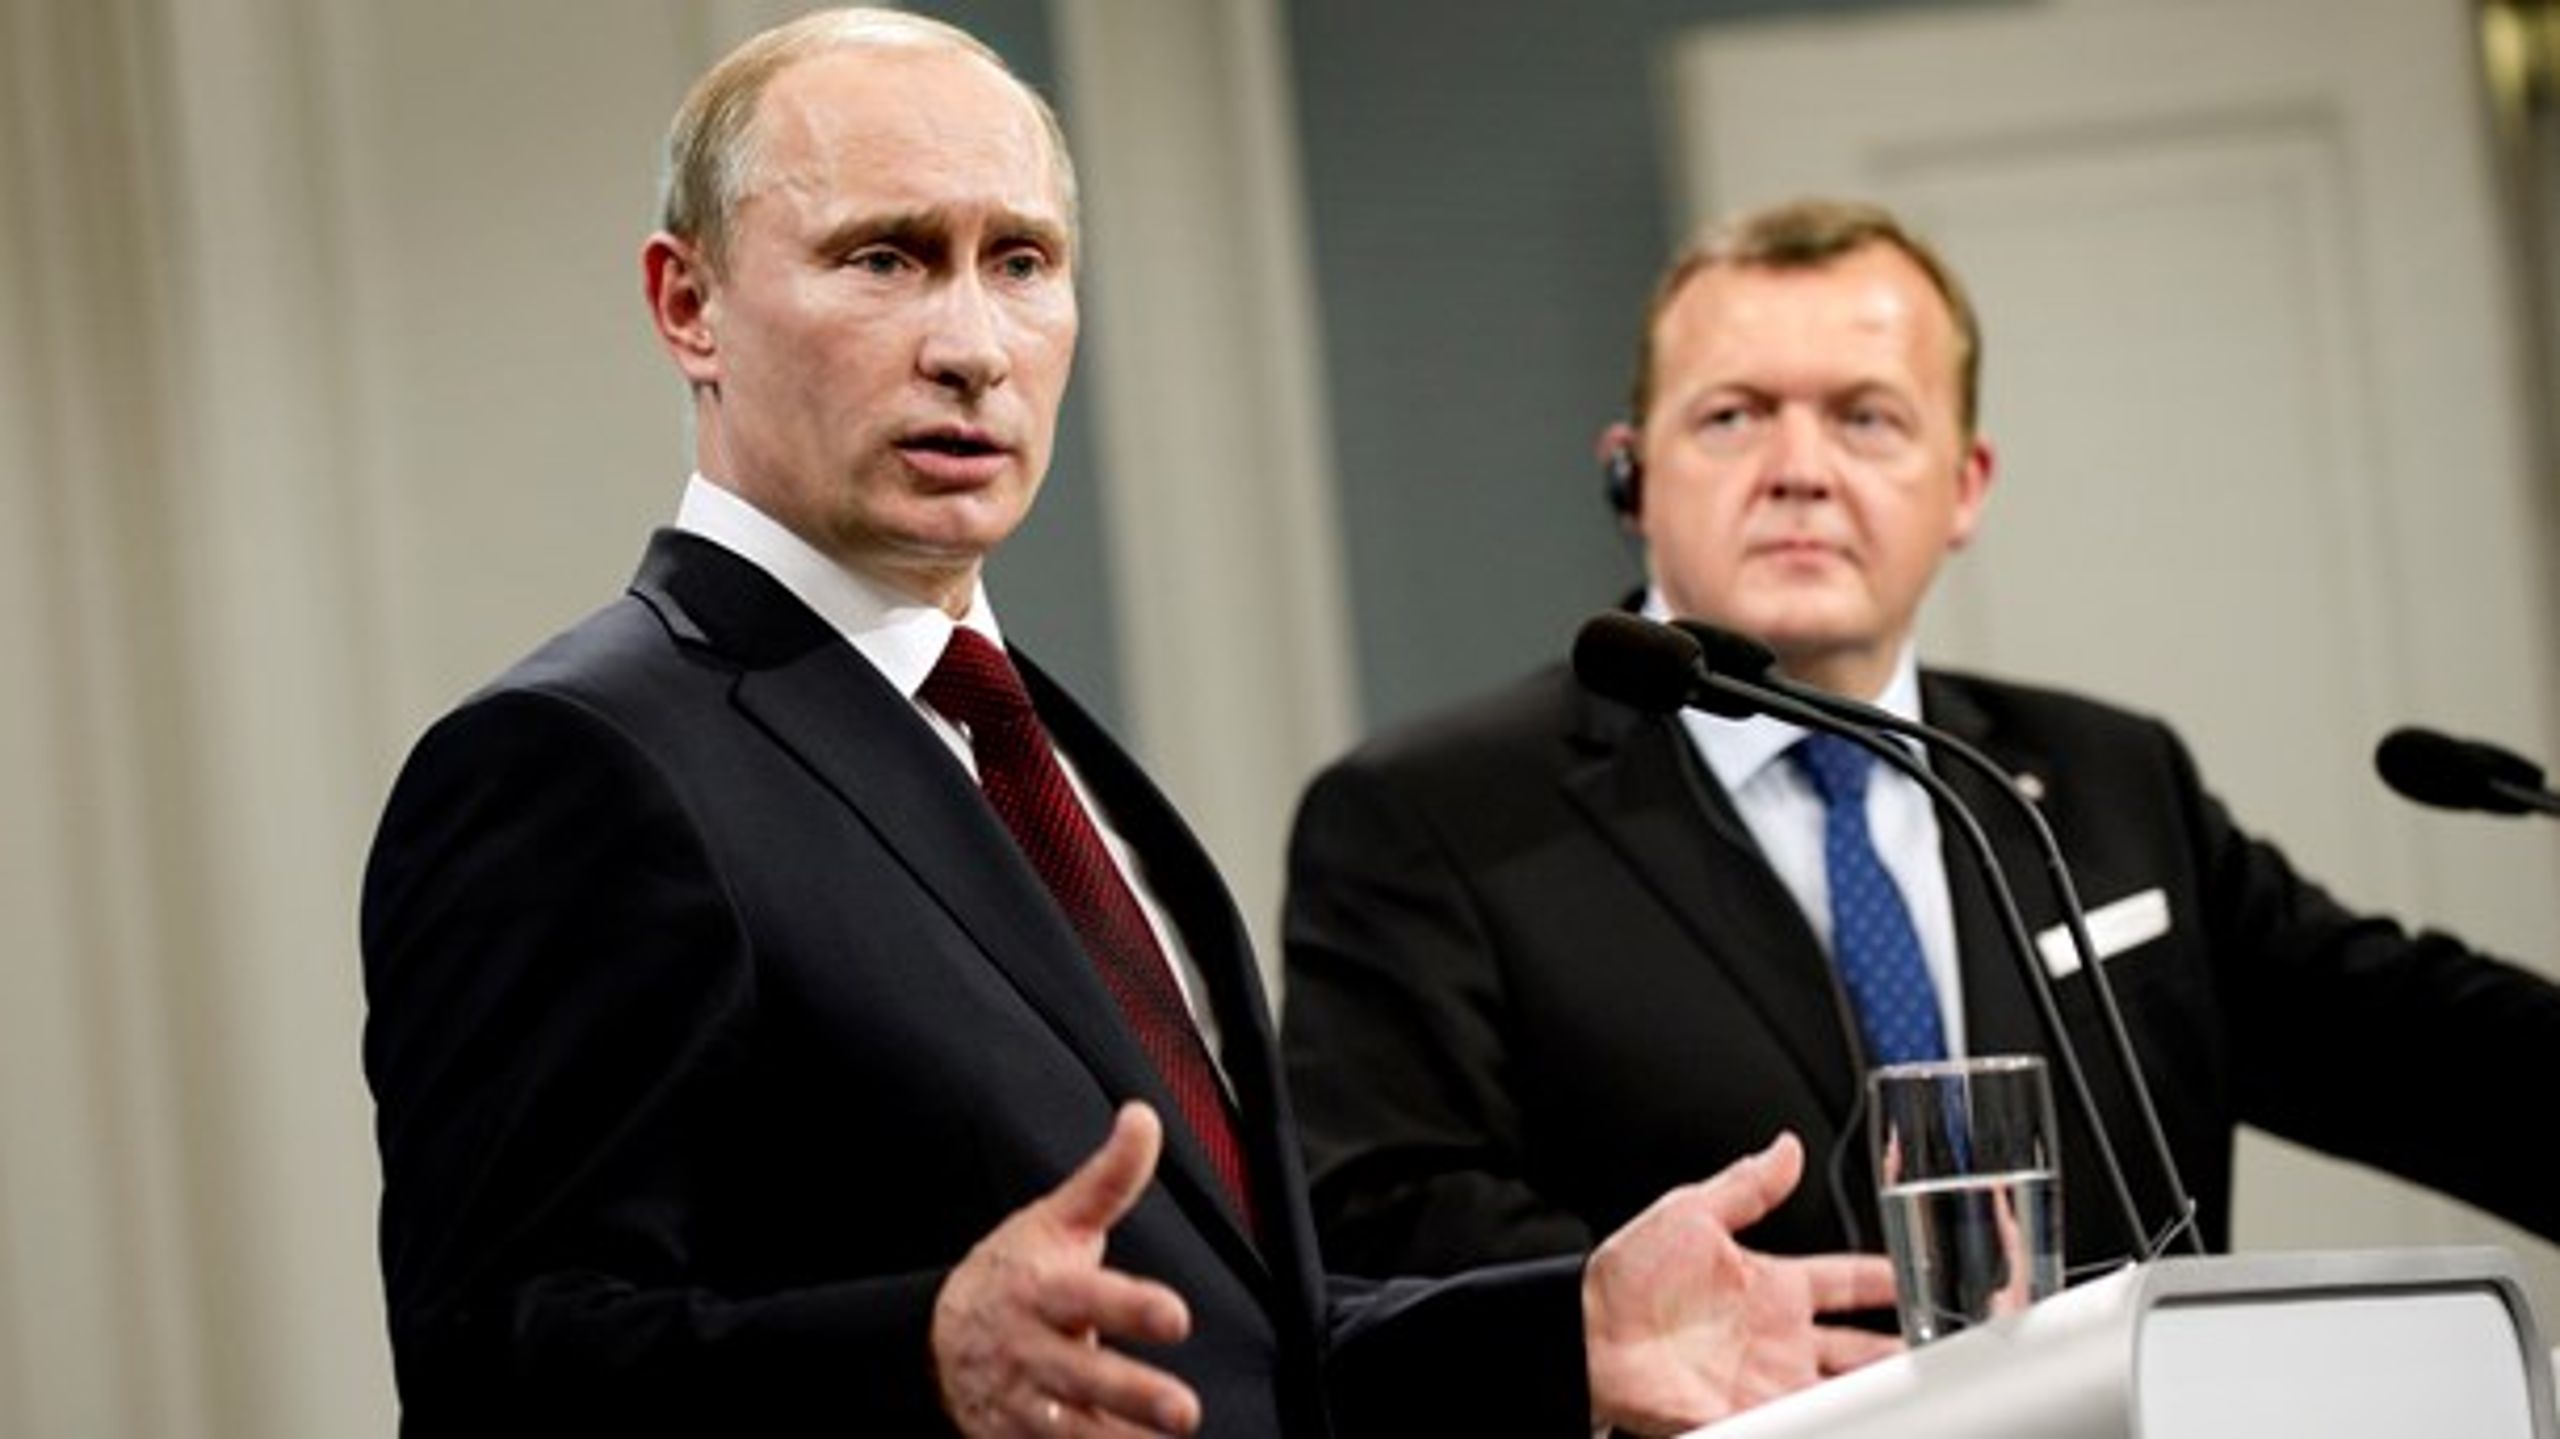 I 2011 besøgte den daværende russiske premierminister Vladimir Putin statsminister Lars Løkke Rasmussen (V). Siden er forholdet til Rusland blevet mere anspændt.